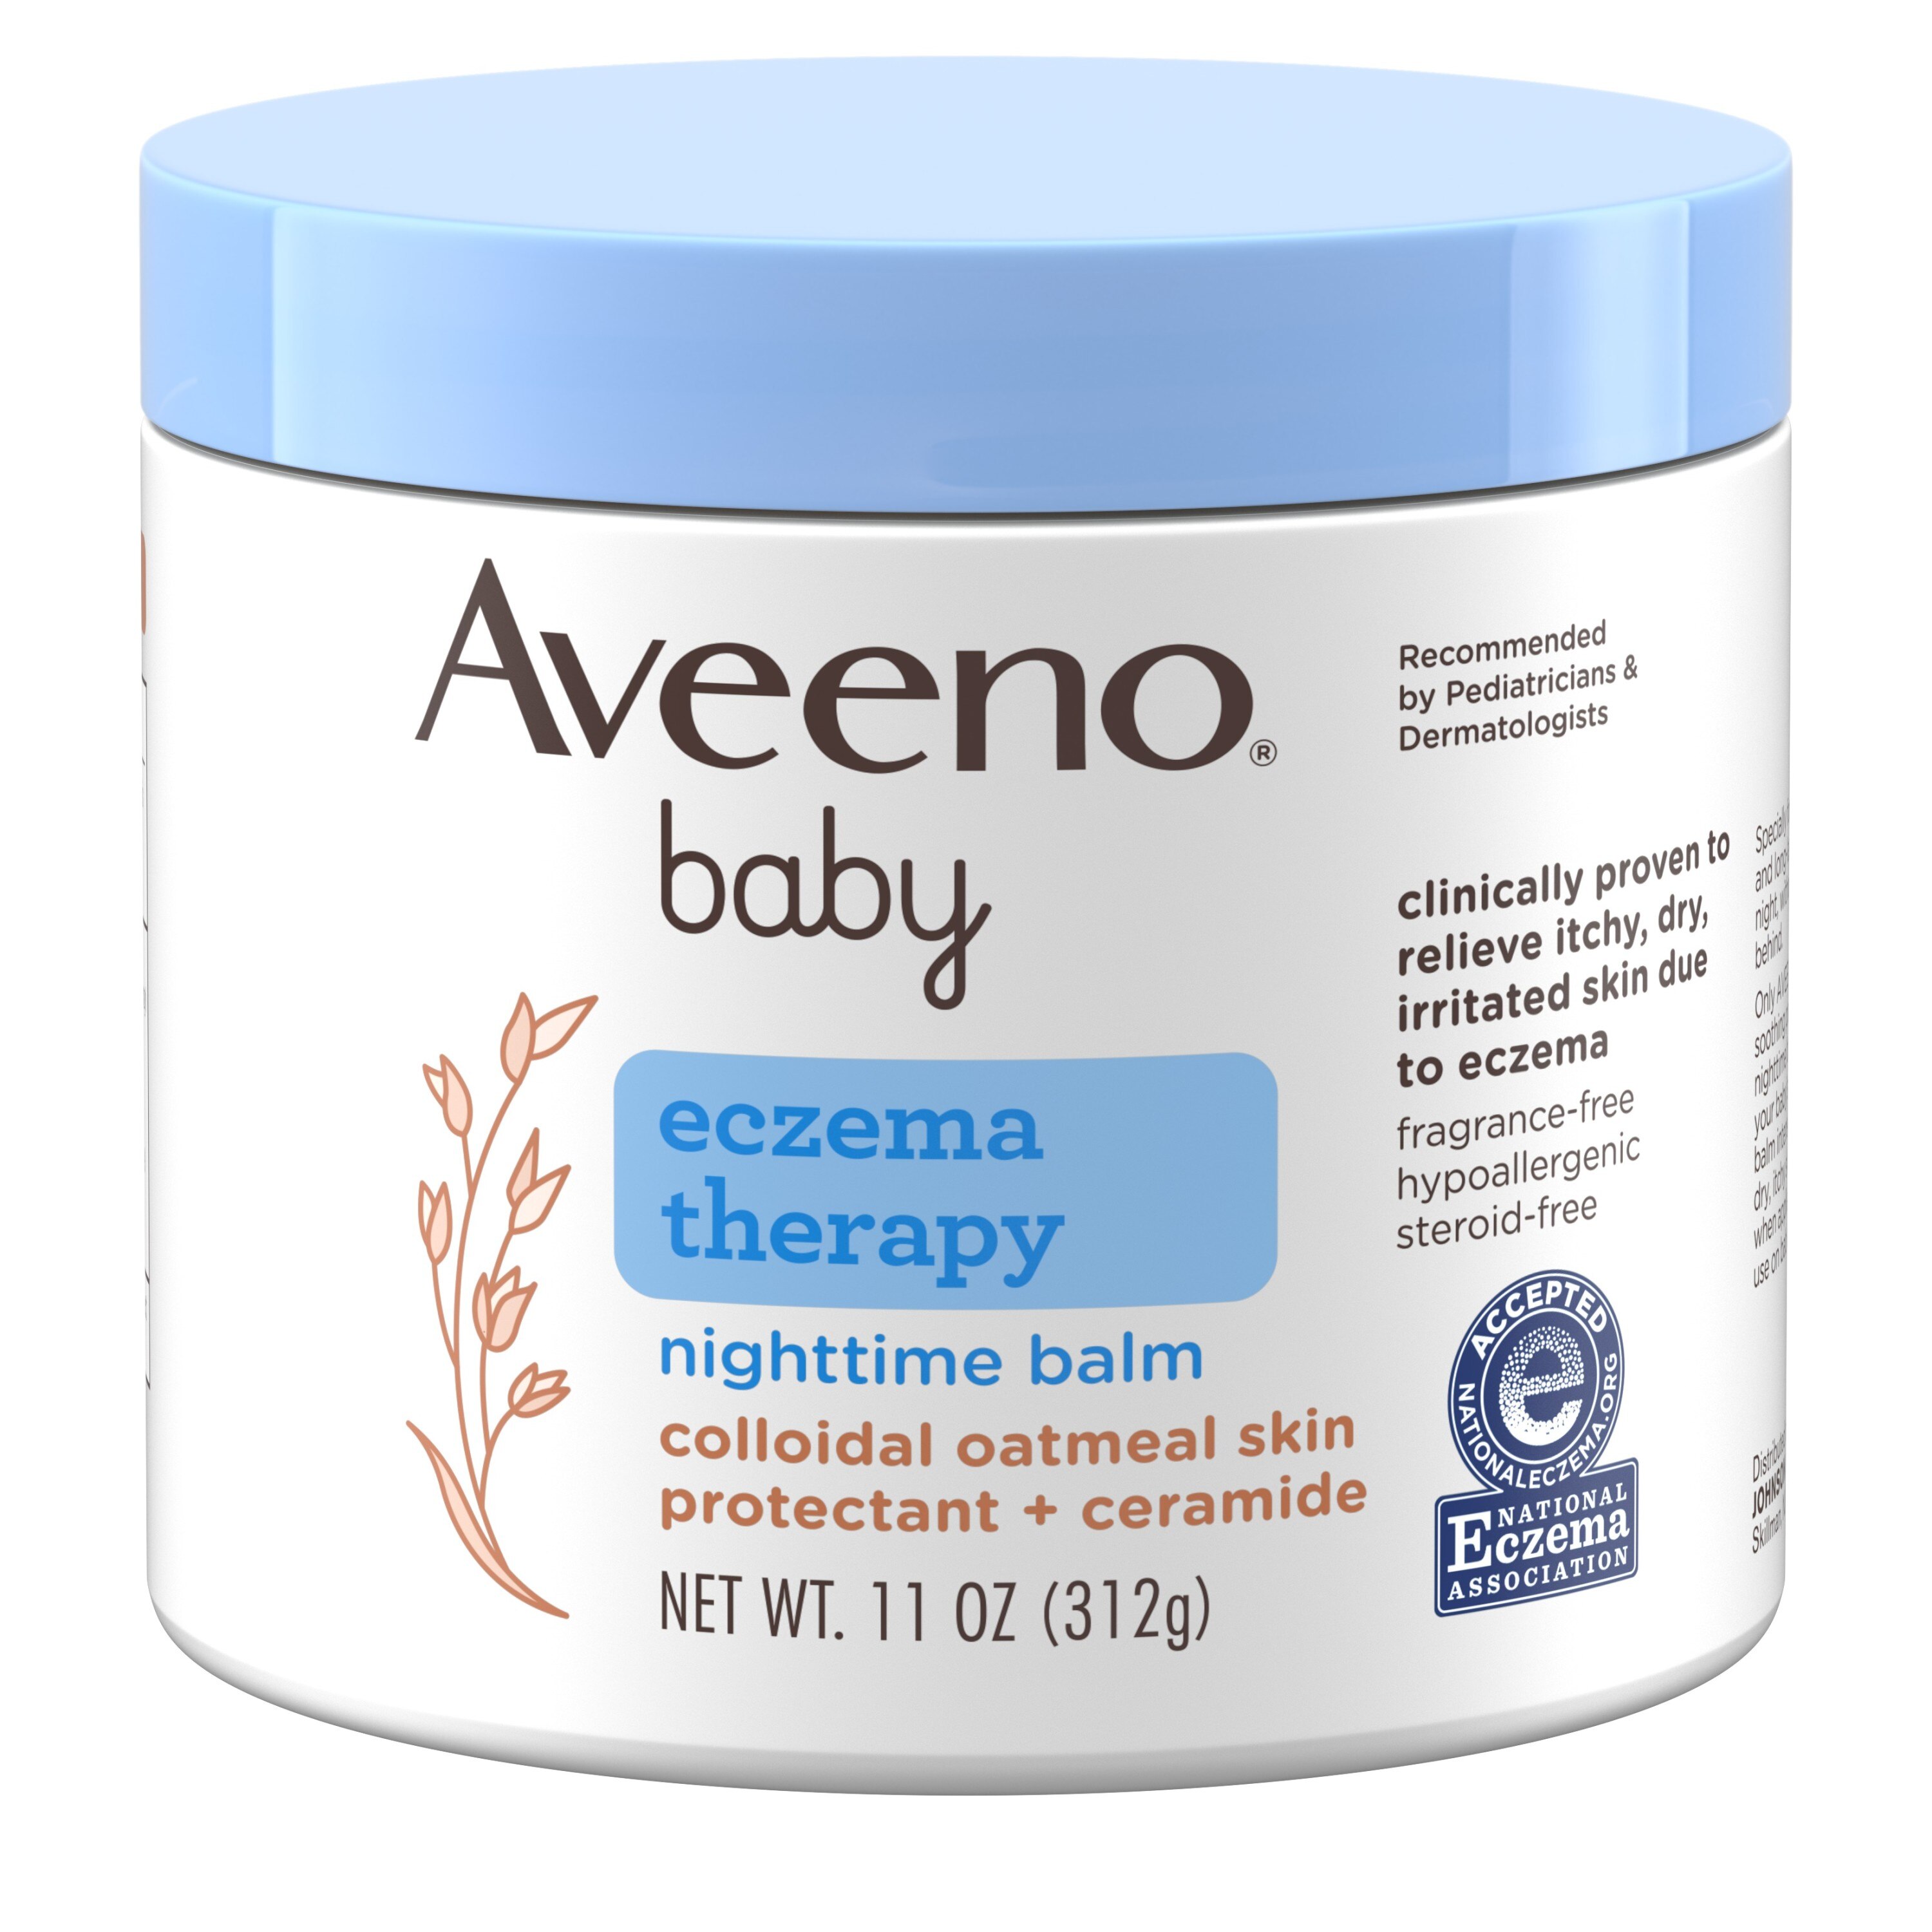 Aveeno Baby Eczema Therapy Nighttime Balm, 11 OZ